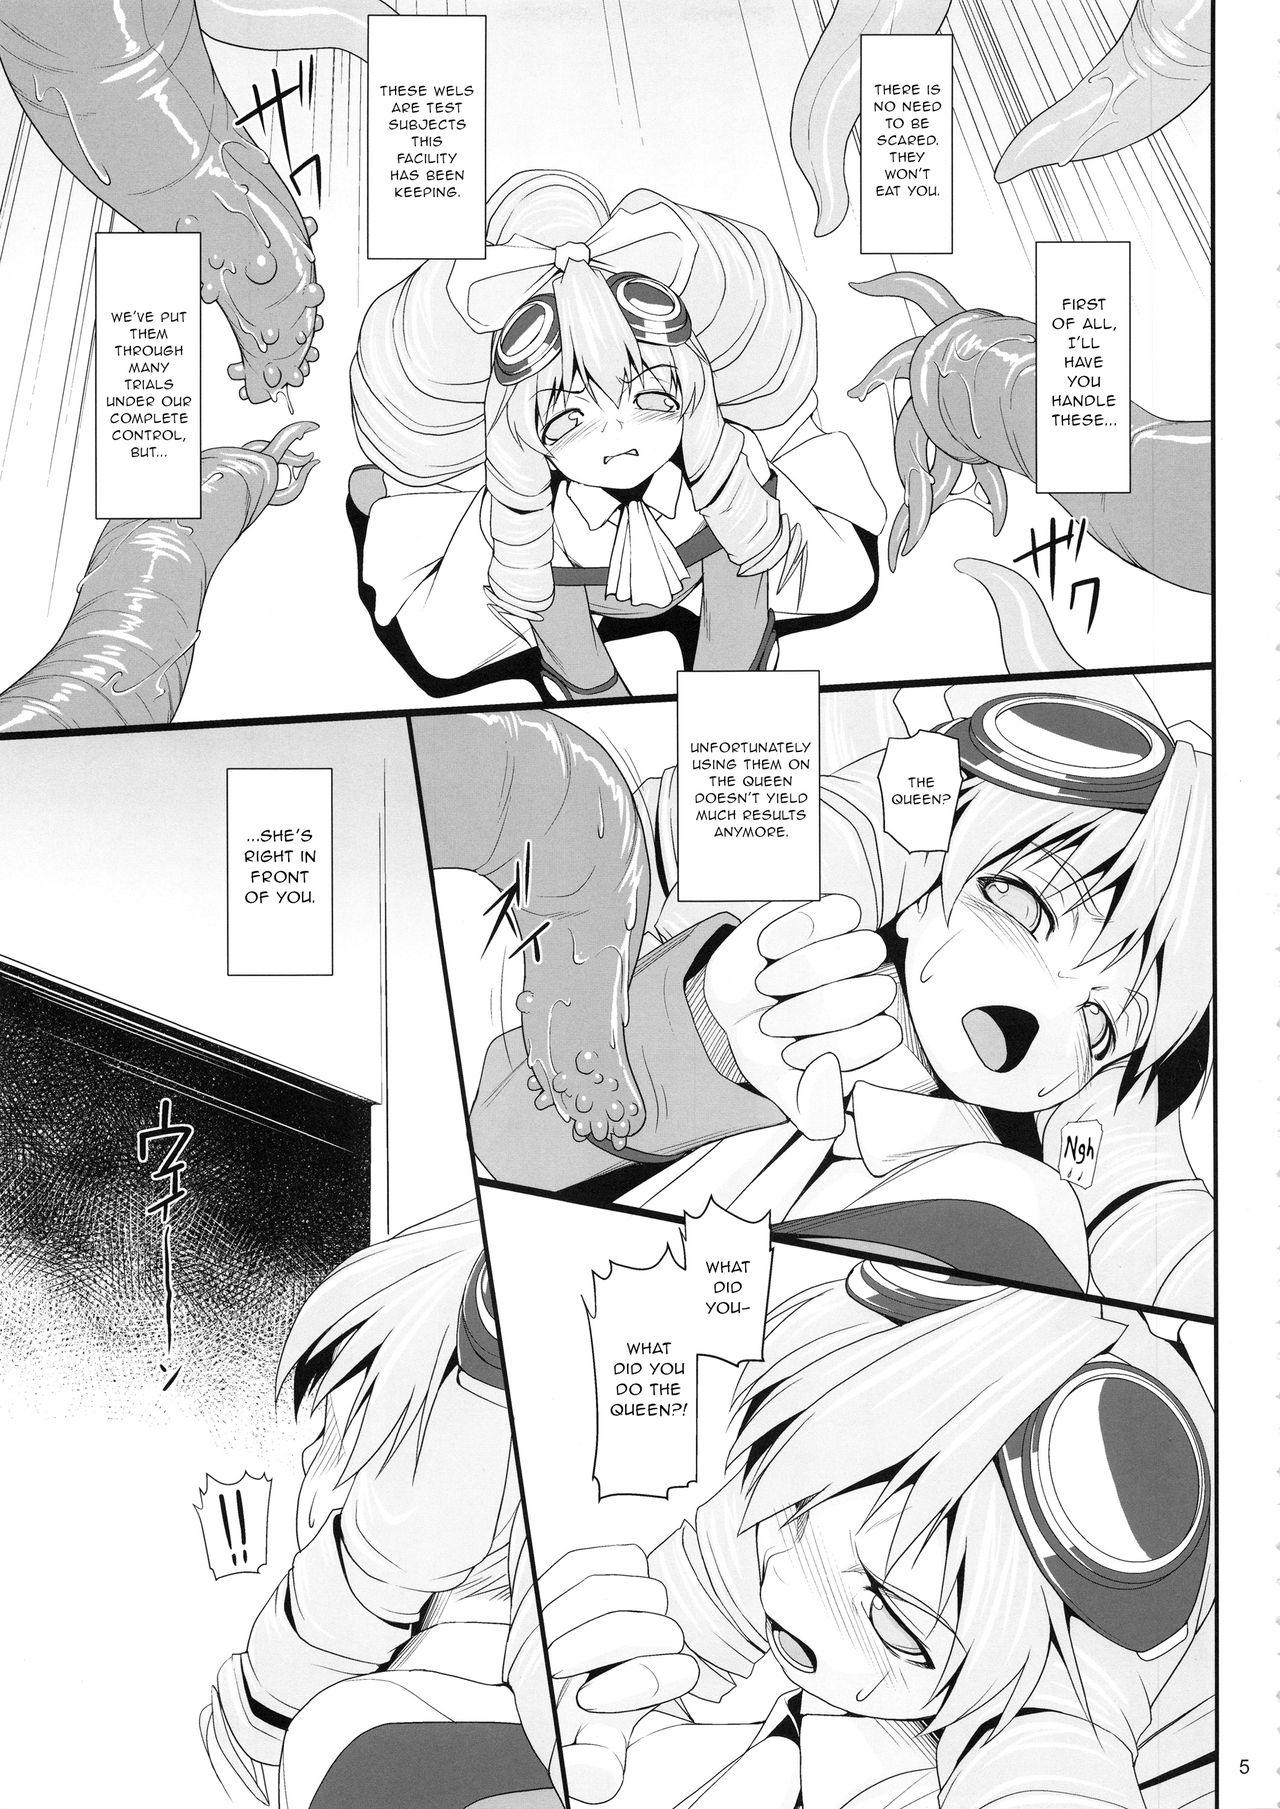 Teen Blowjob Shokuzai no Ma 5 - Xenogears Groping - Page 4